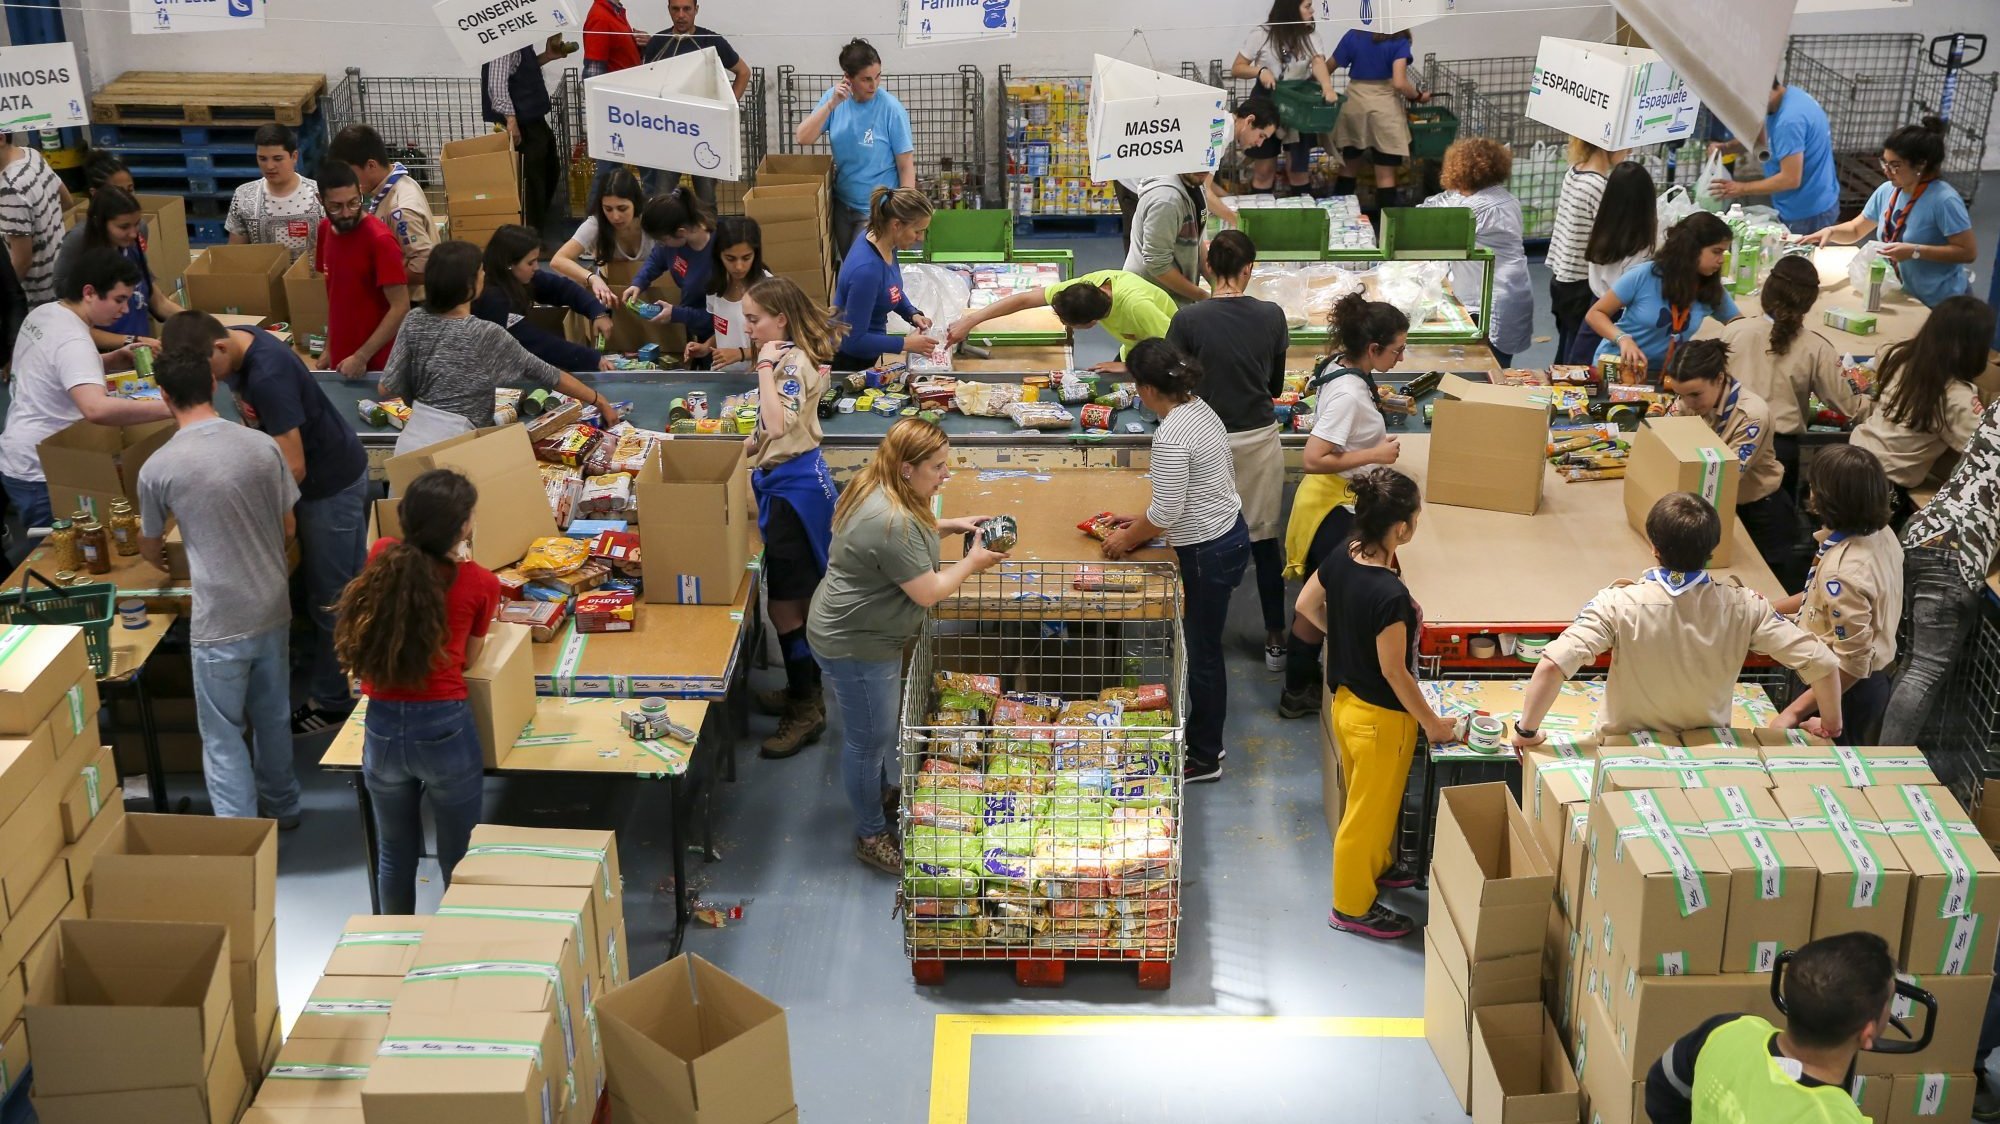 Também a Refood em Faro viu aumentar nas últimas semanas os pedidos de ajuda alimentar às famílias, a quem já teve de começar a recusar apoio por falta de capacidade de armazenamento